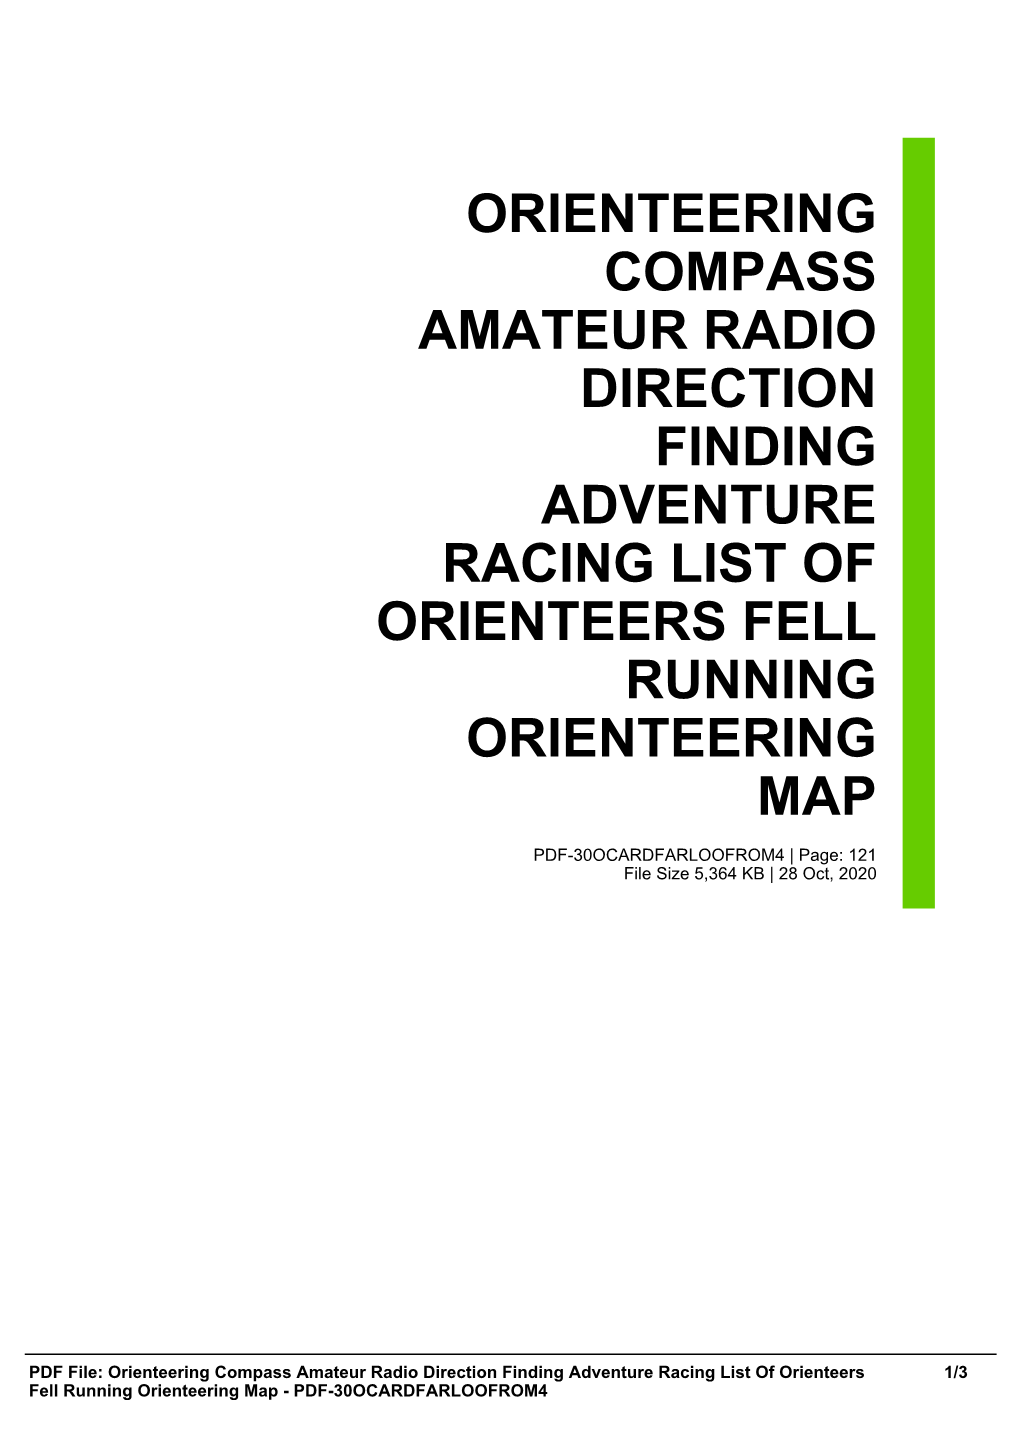 Orienteering Compass Amateur Radio Direction Finding Adventure Racing List of Orienteers Fell Running Orienteering Map